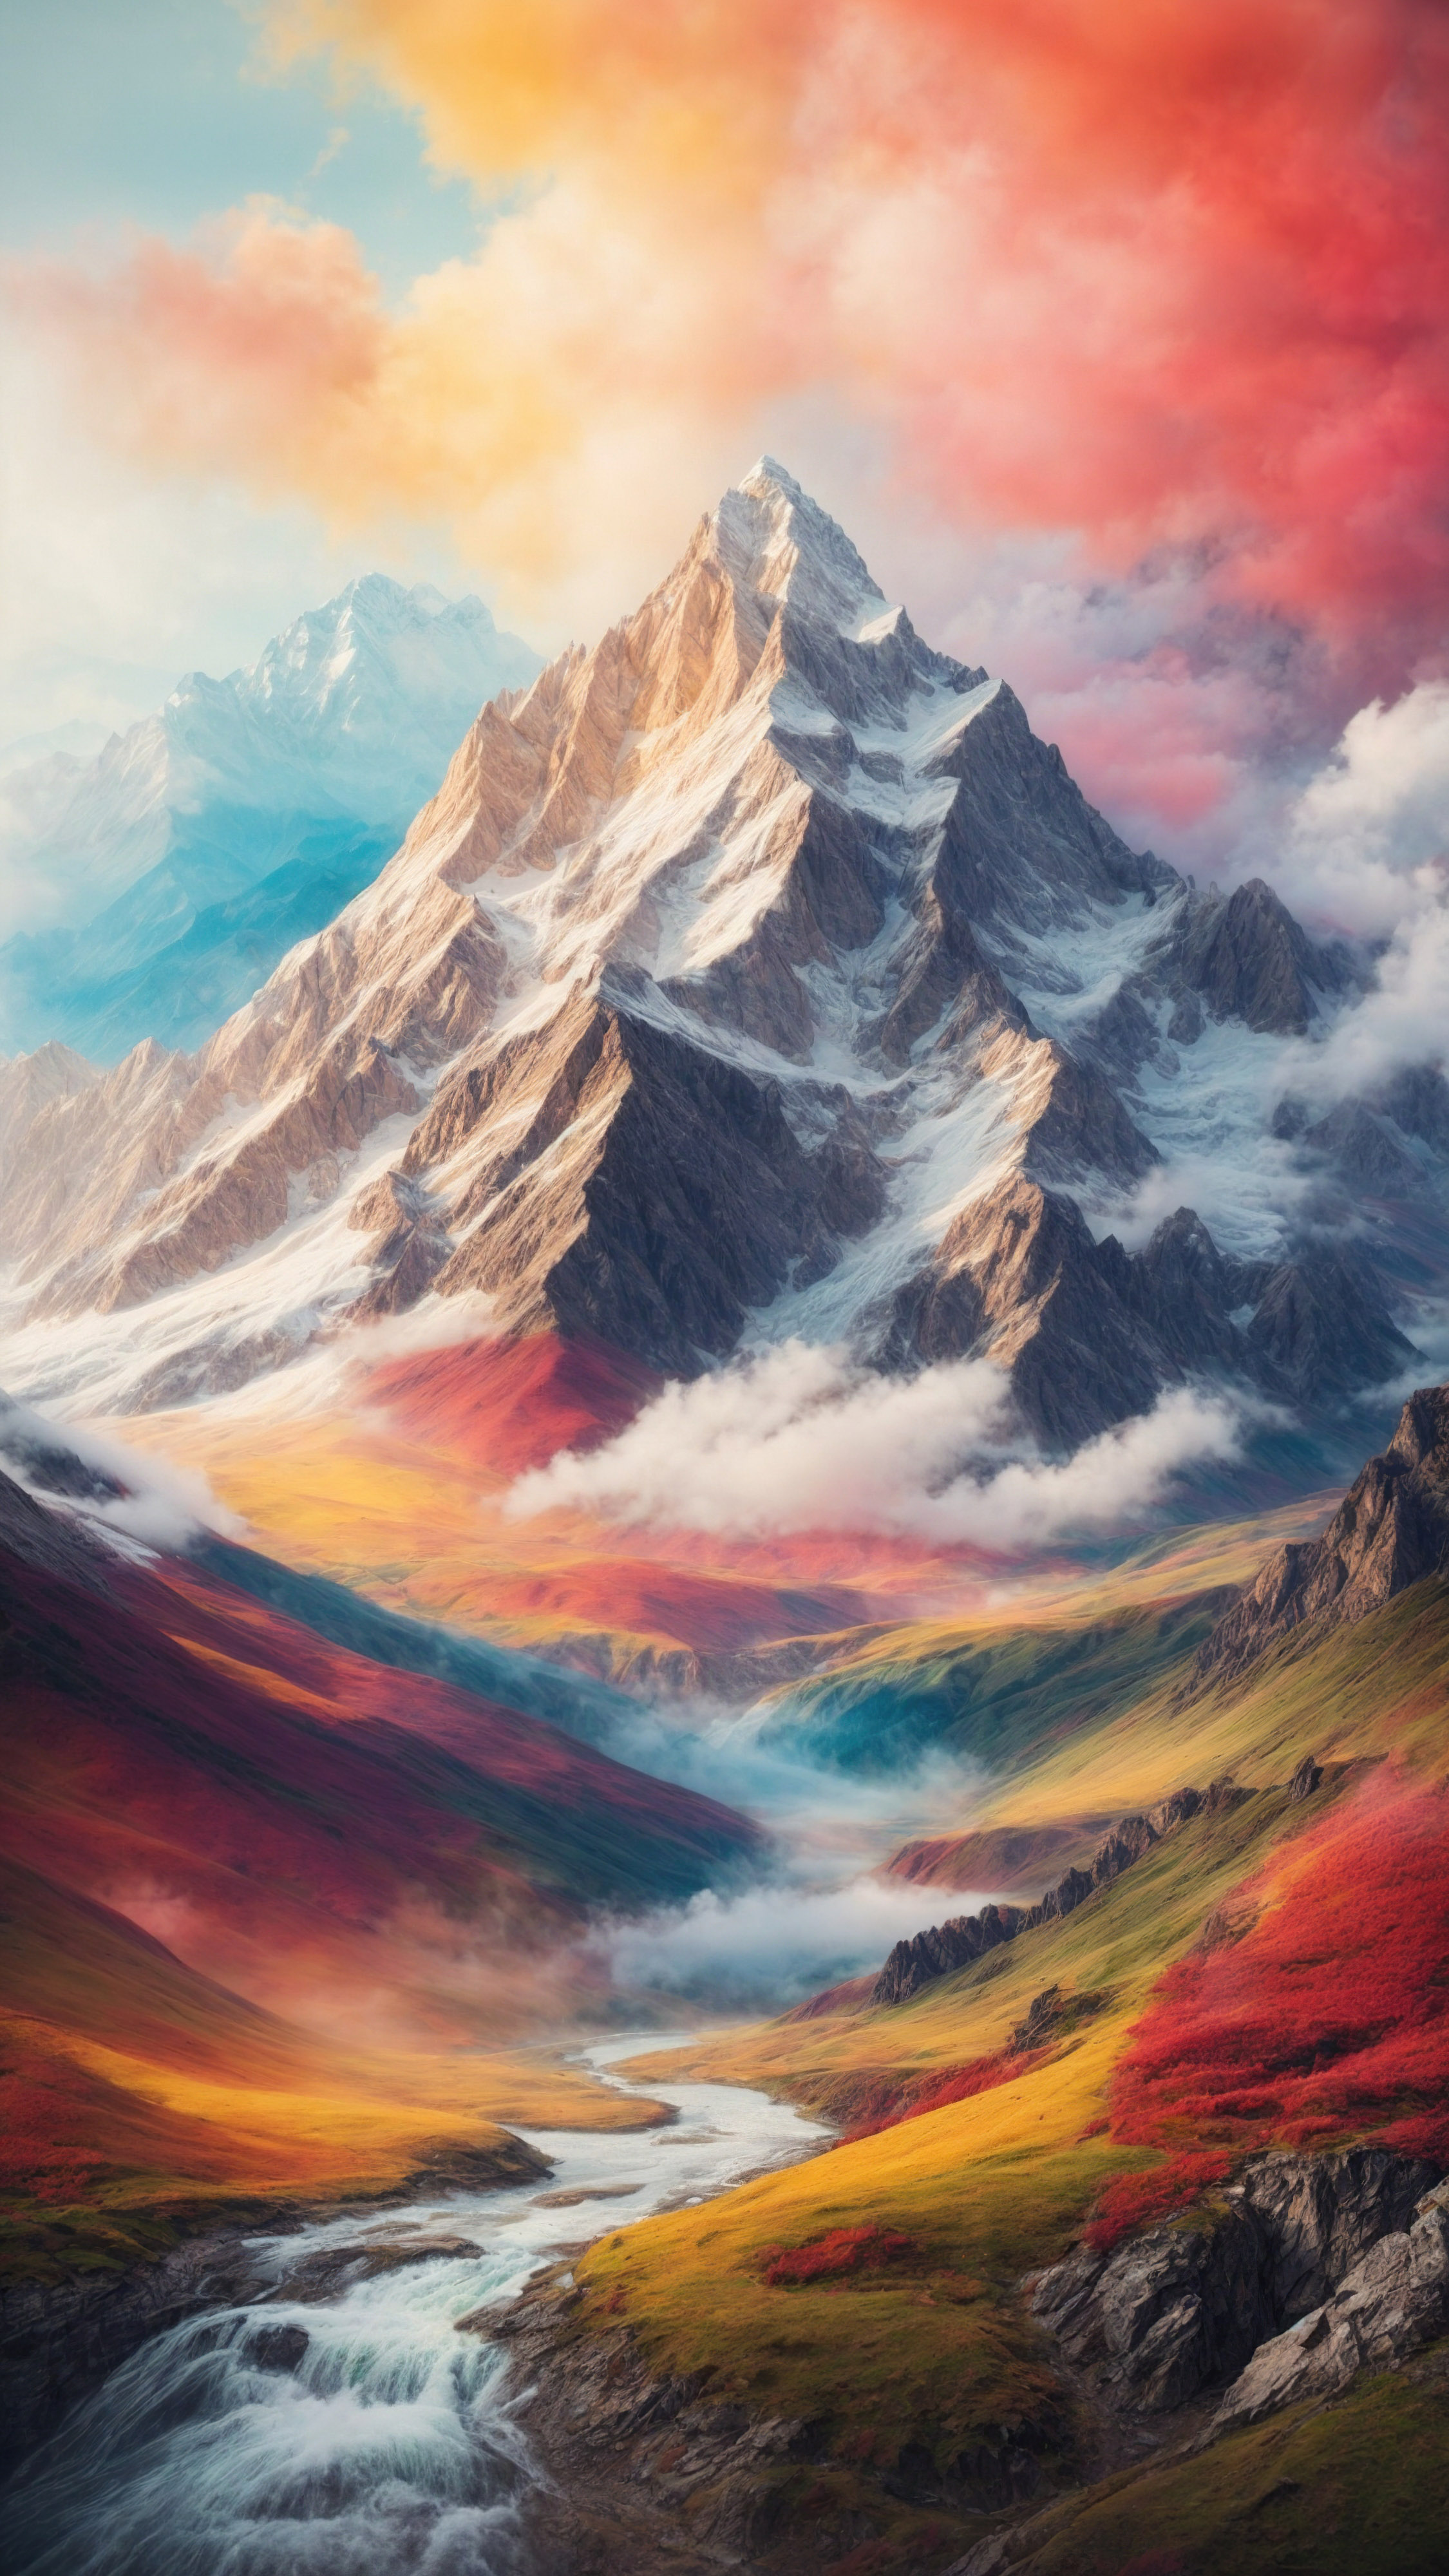 Appréciez l'art d'une montagne artistique avec un style de peinture et un coup de pinceau, sur fond coloré, avec notre fond d'écran de montagne iOS.